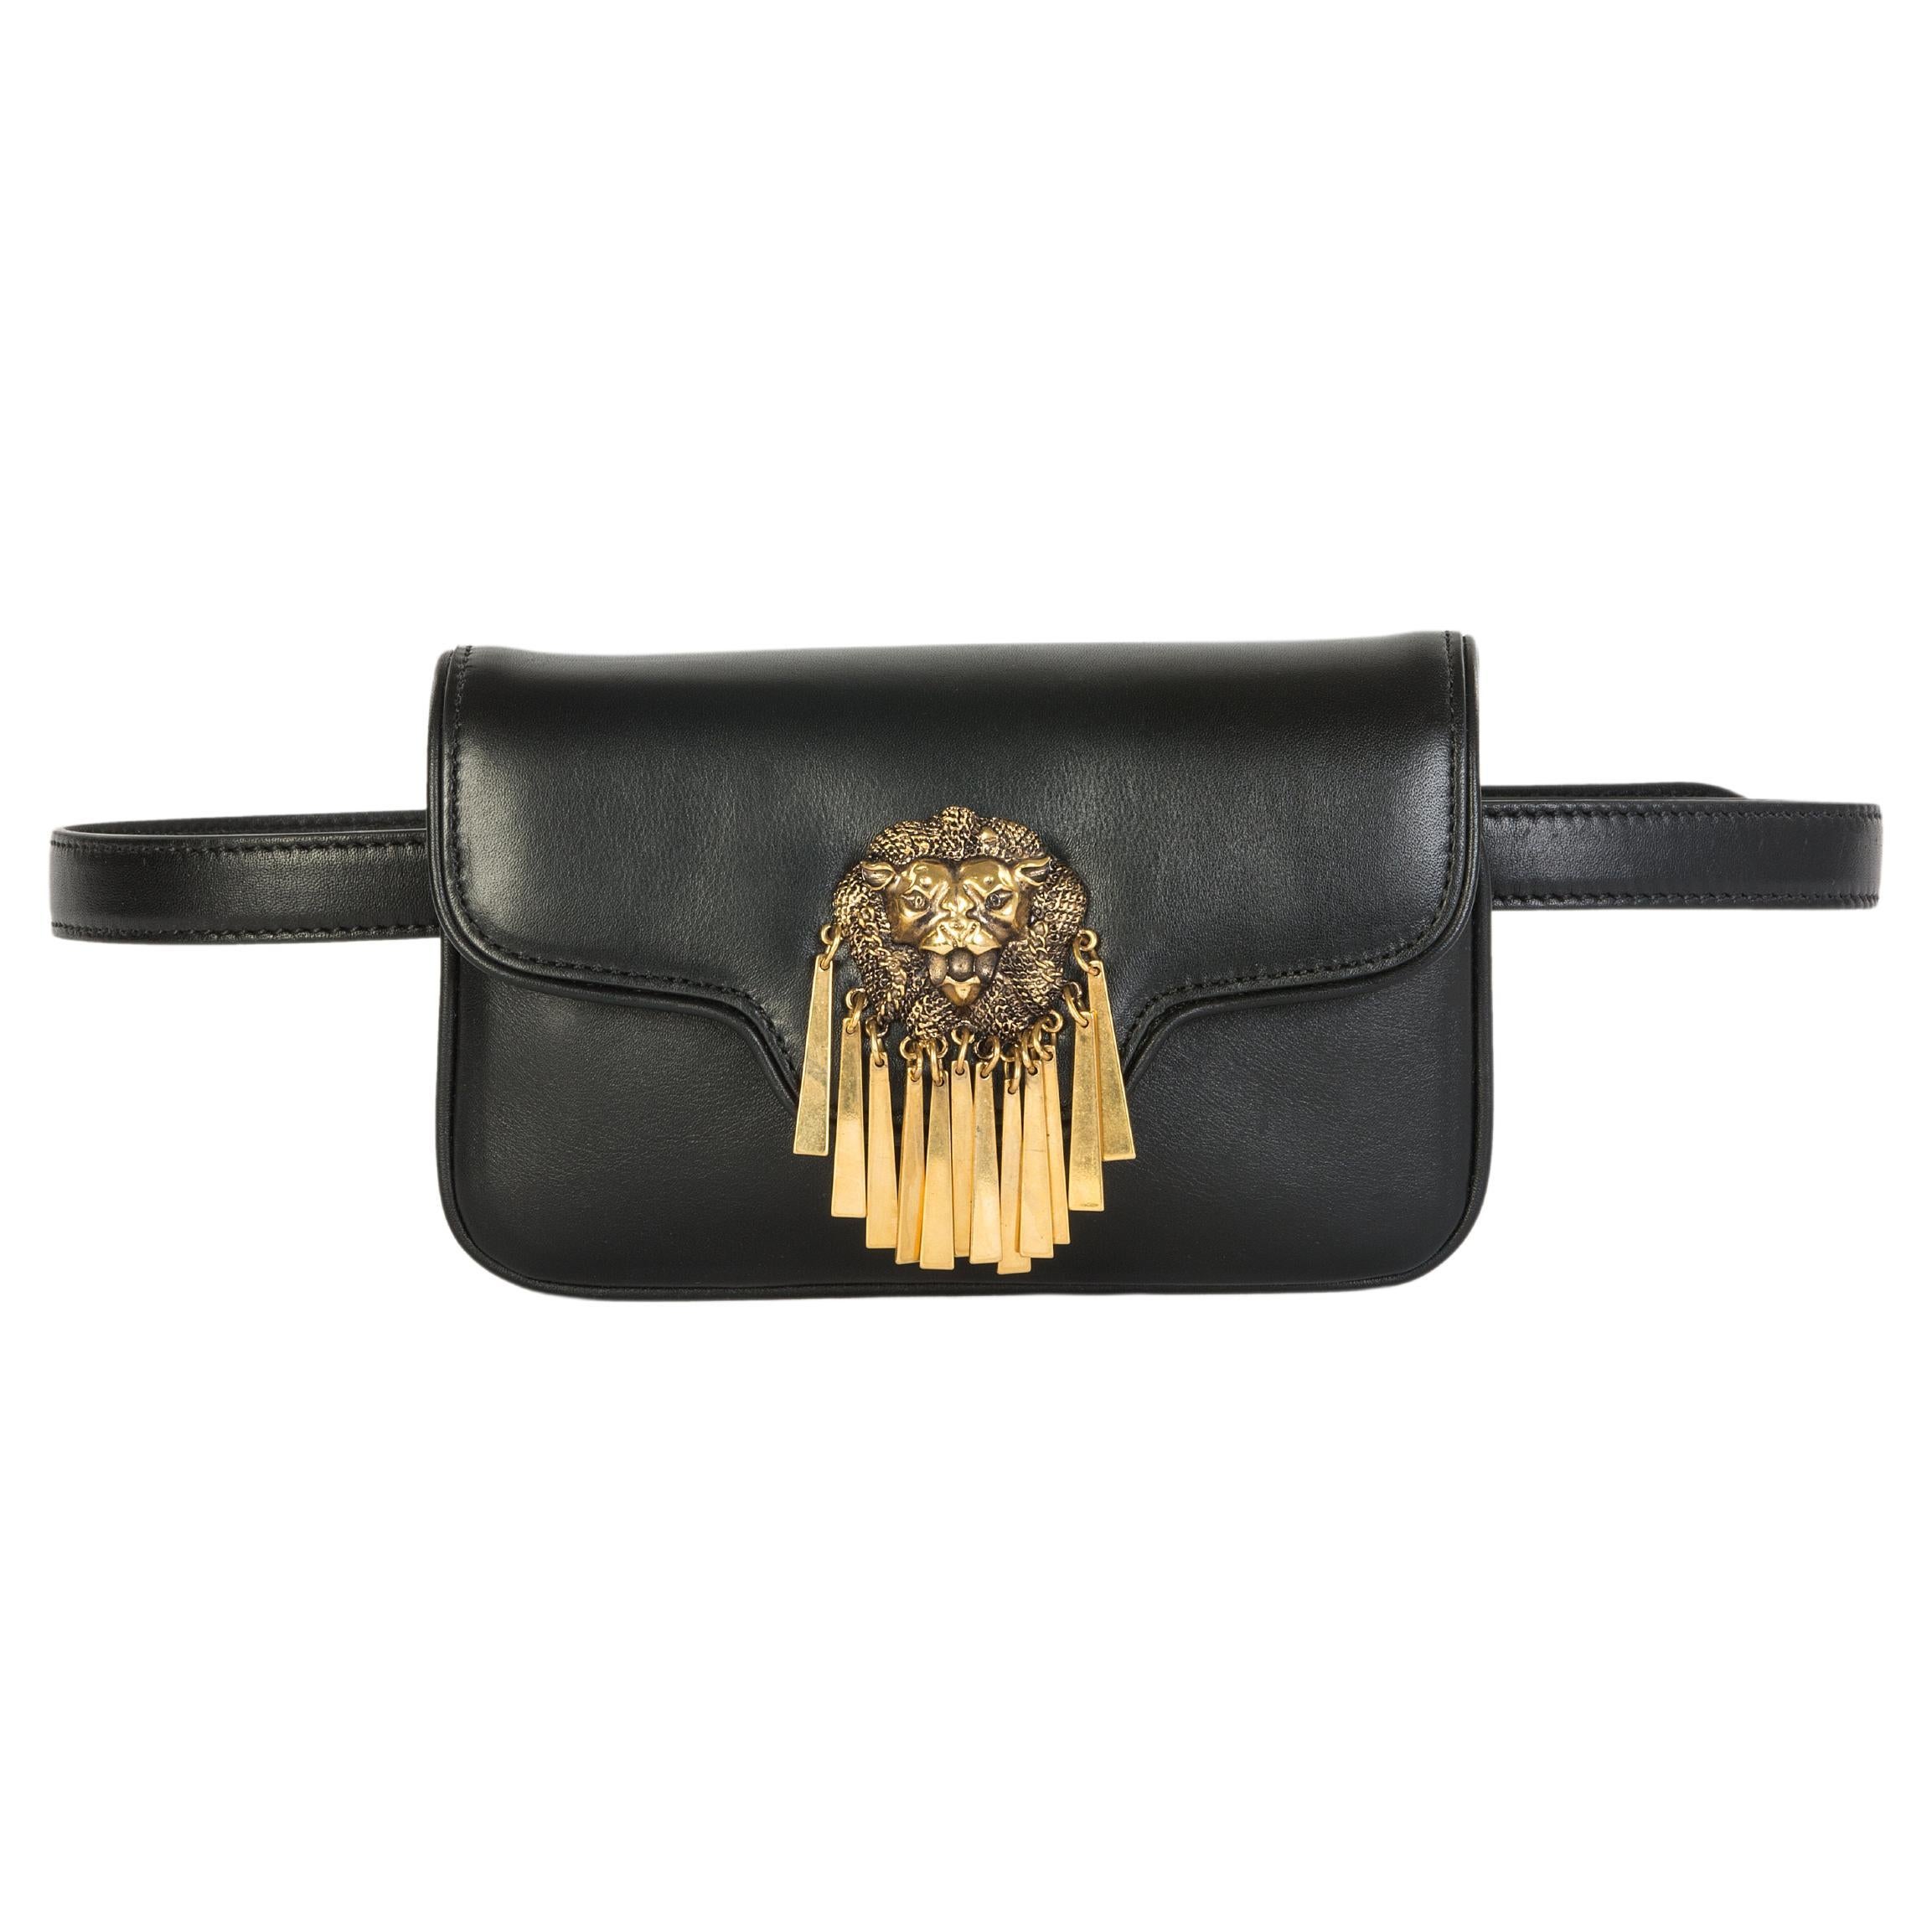 Black leather gold hardware shoulder bag fanny pack NWOT